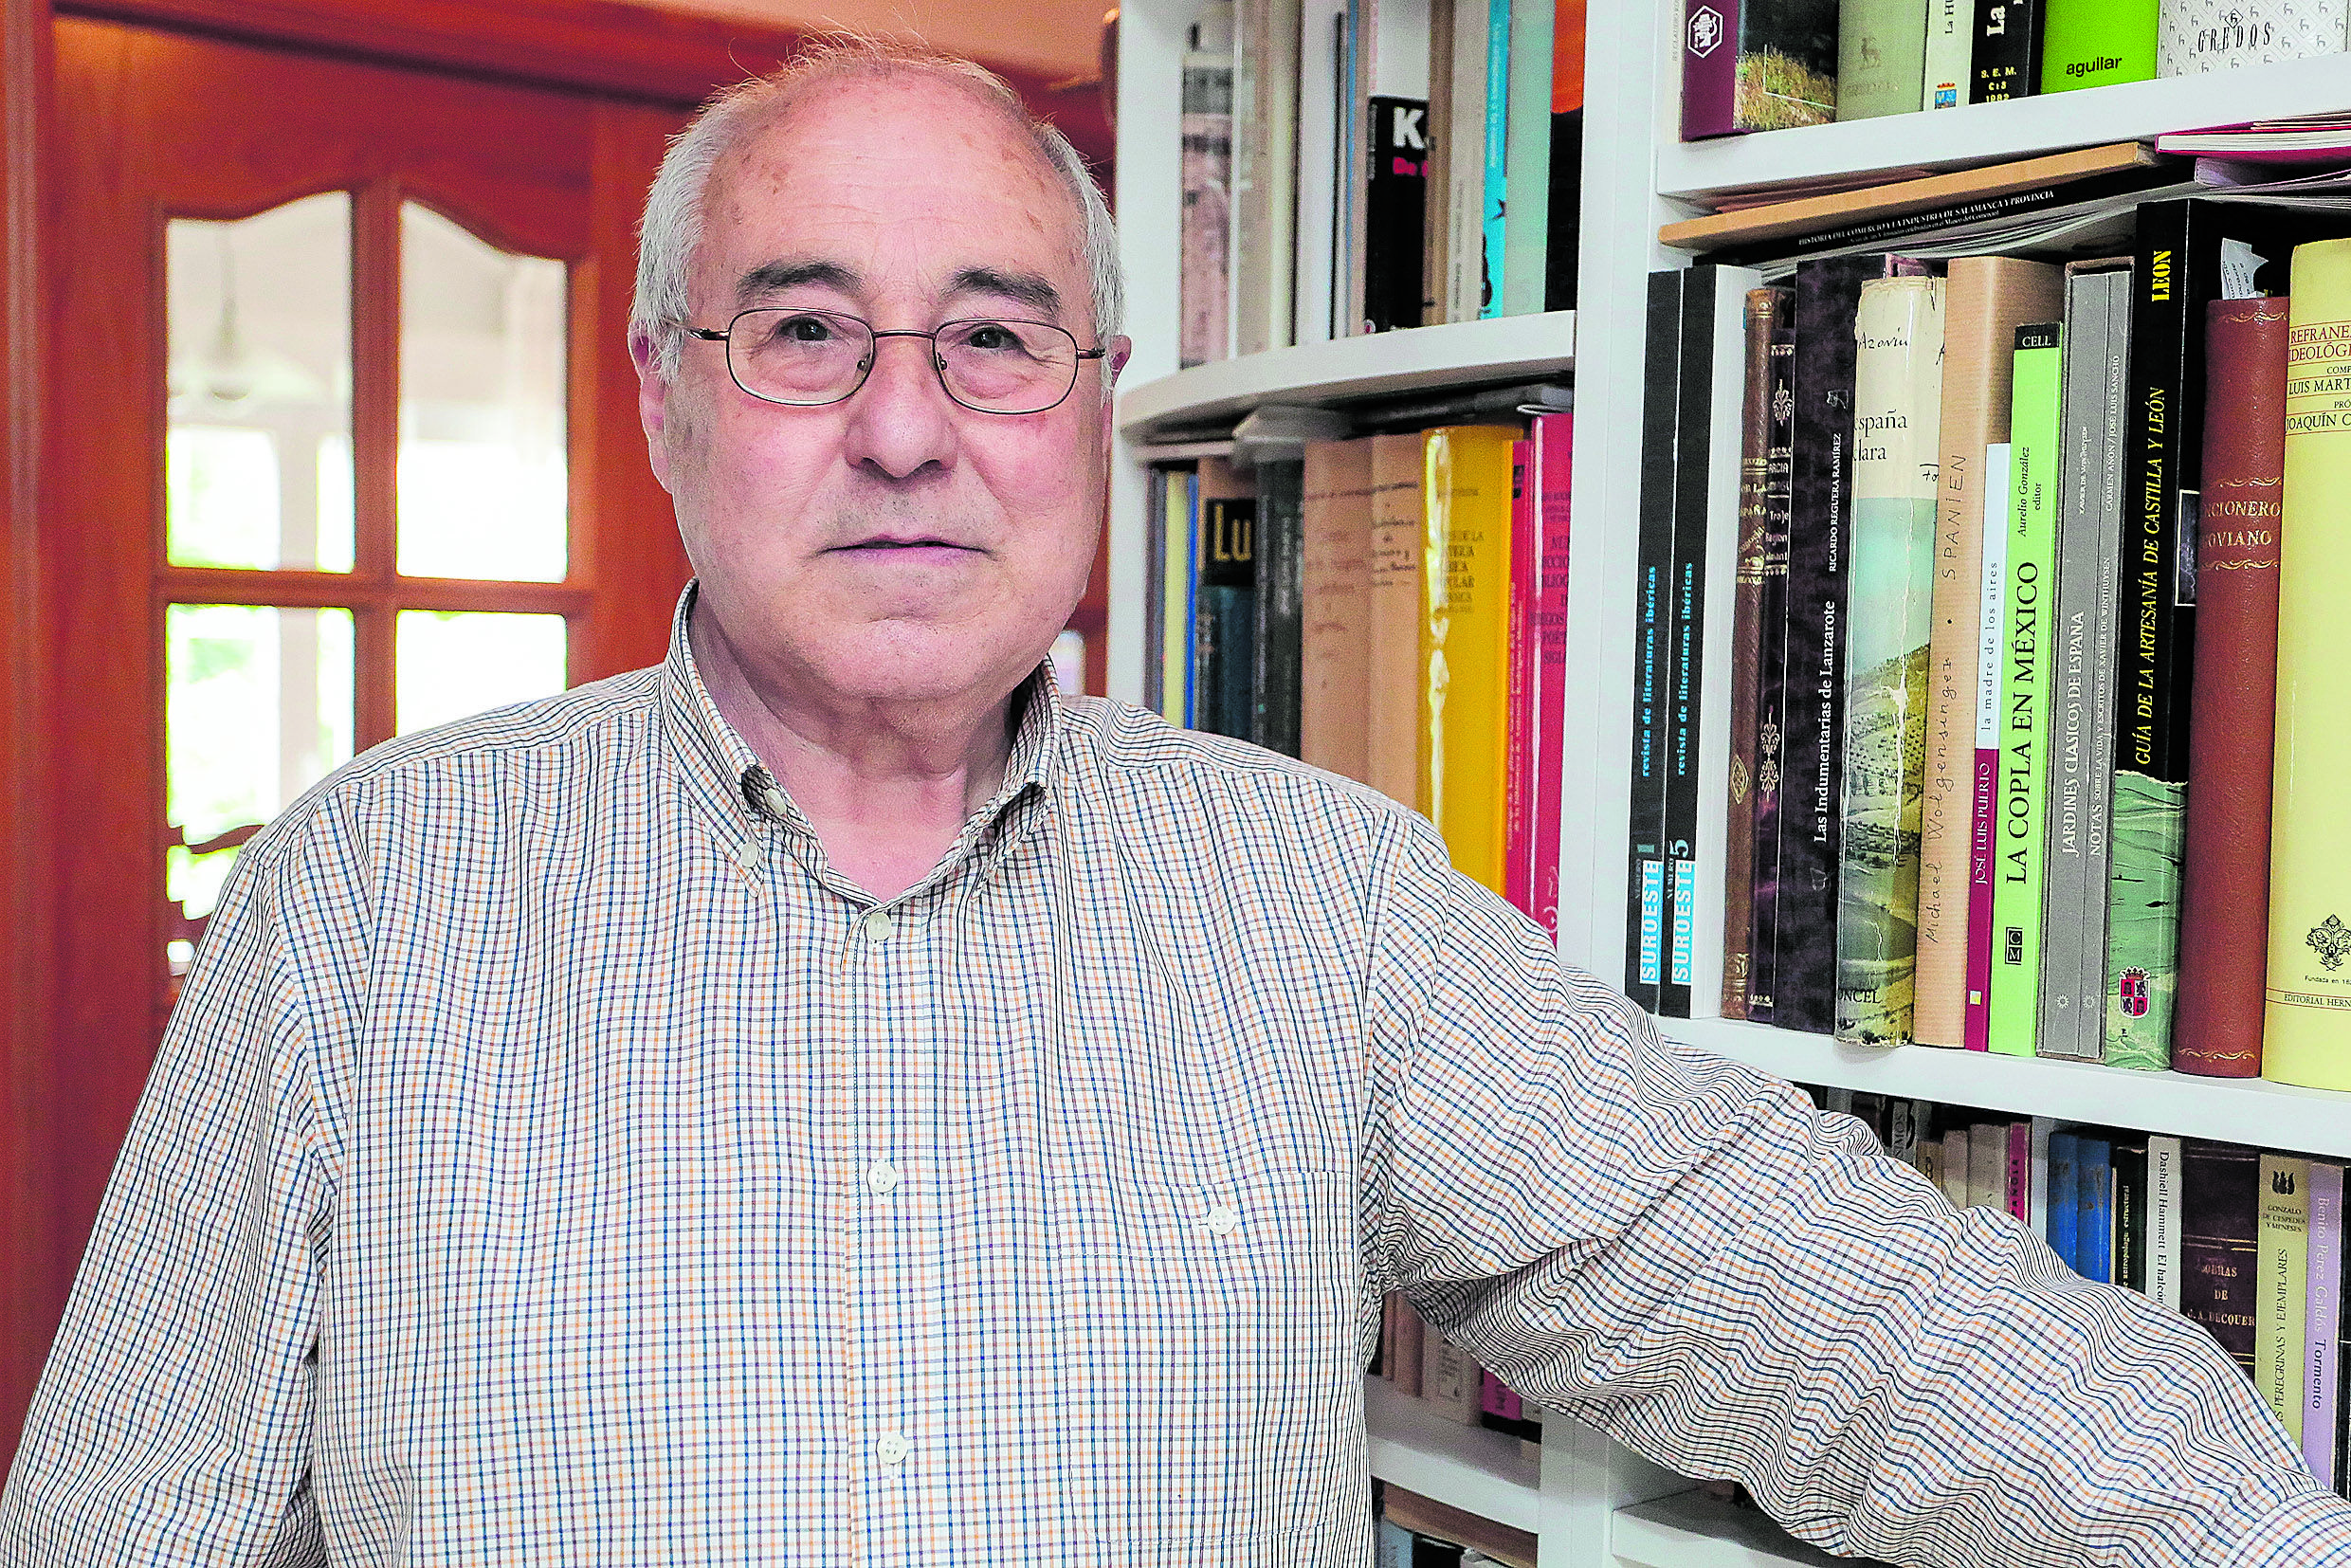 El poeta y escritor salmantino afincado en León, José Luis Puerto, tiene nueva publicación. | ICAL